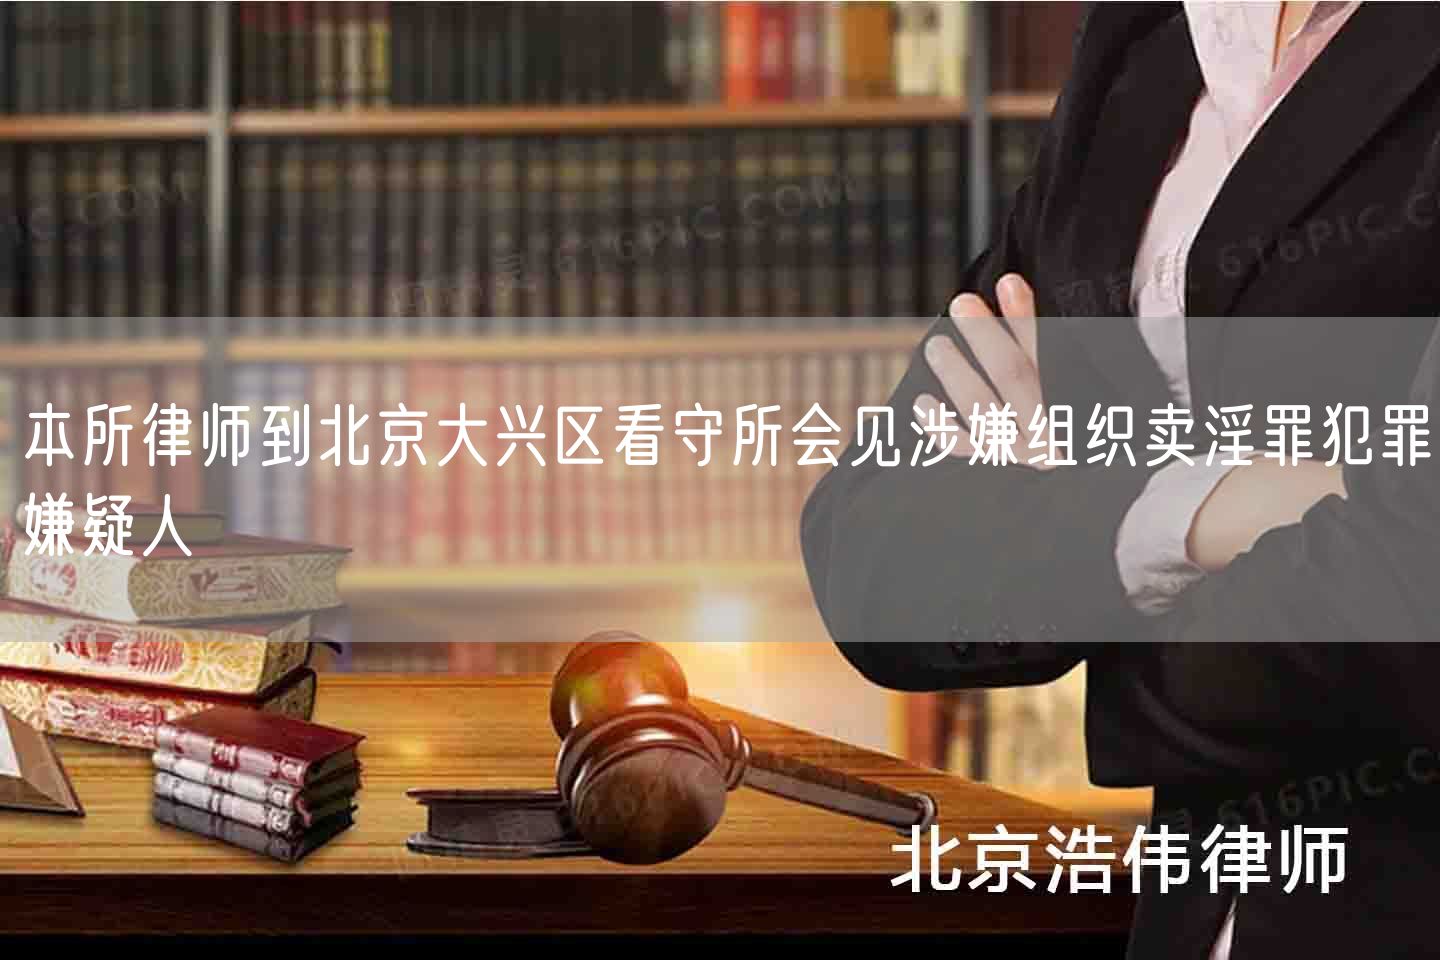 本所律师到北京大兴区看守所会见涉嫌组织卖淫罪犯罪嫌